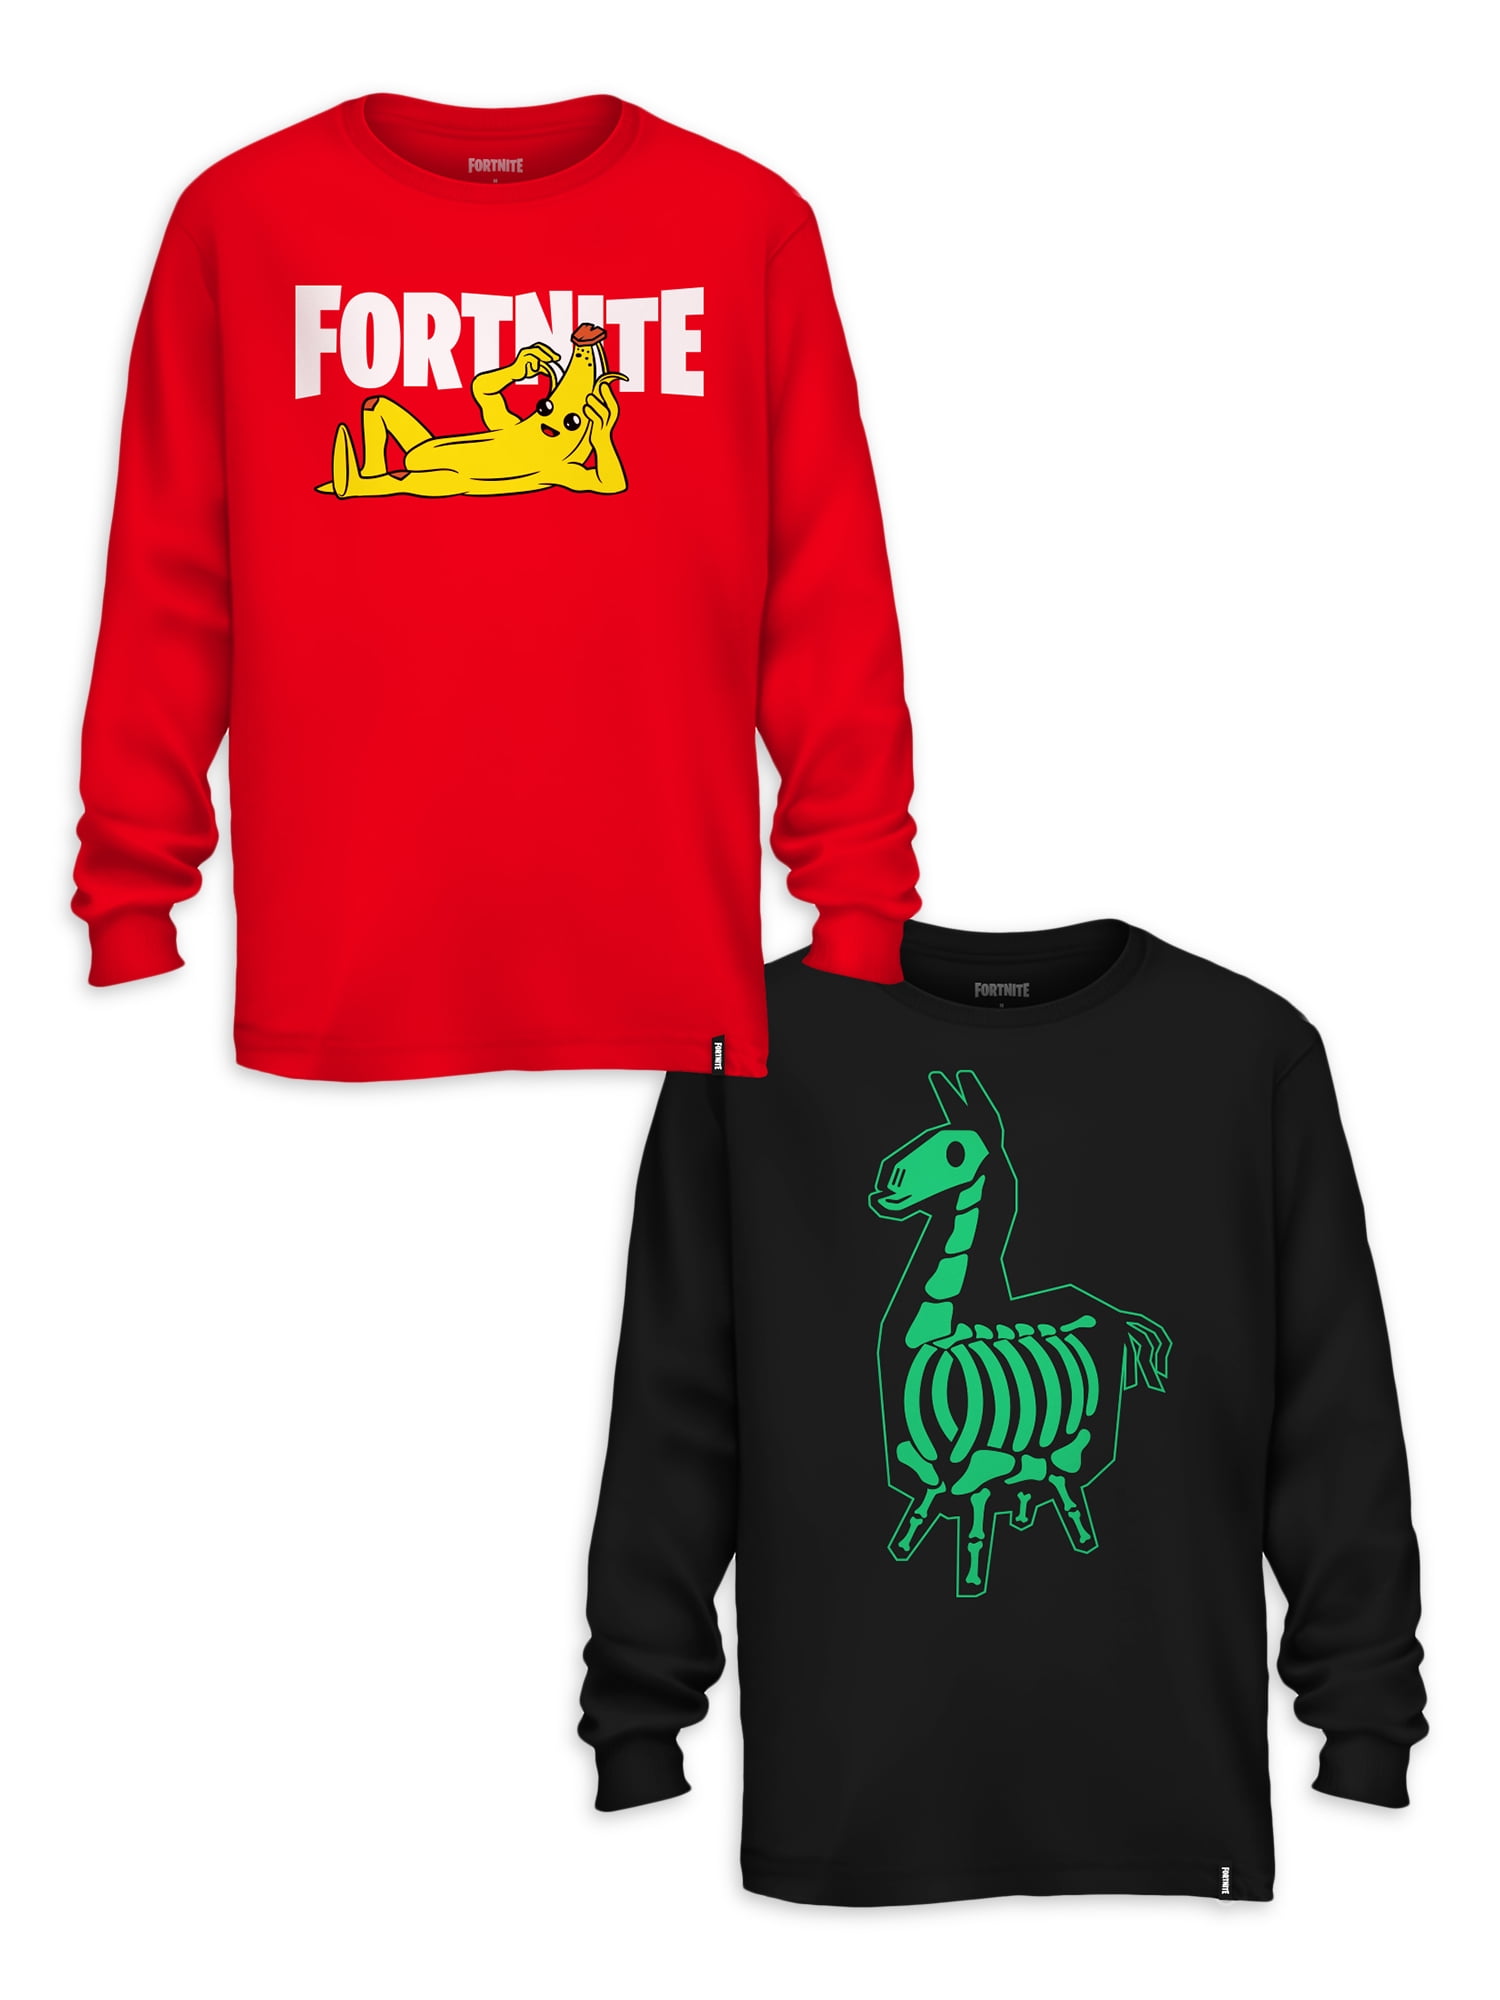 OG Fortnite T-Shirt Epic Games 2018 - Llama Size XXL Adult